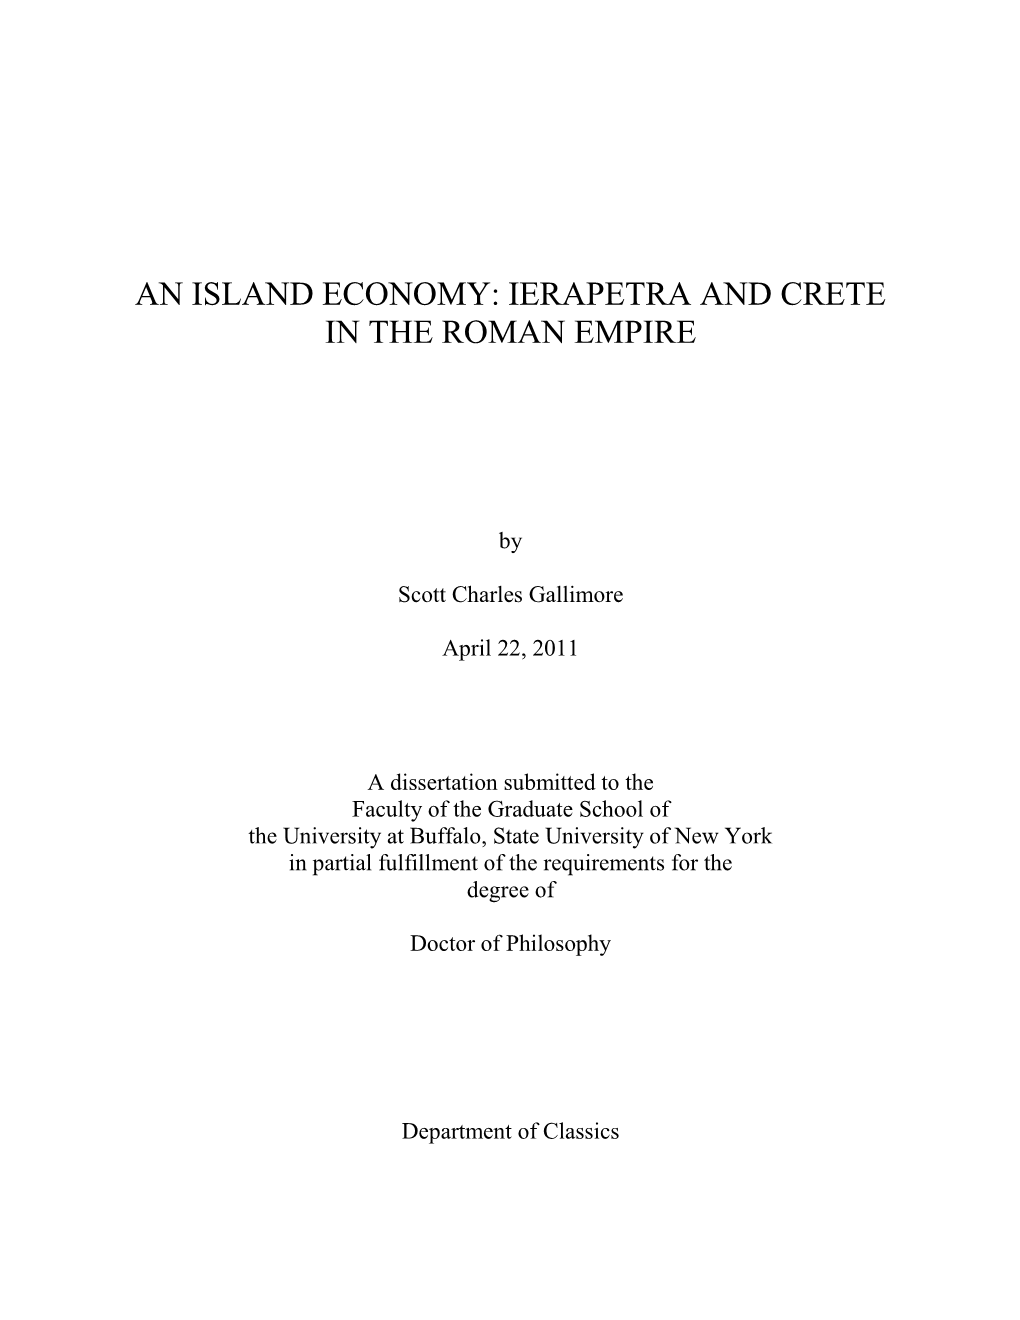 Ierapetra and Crete in the Roman Empire